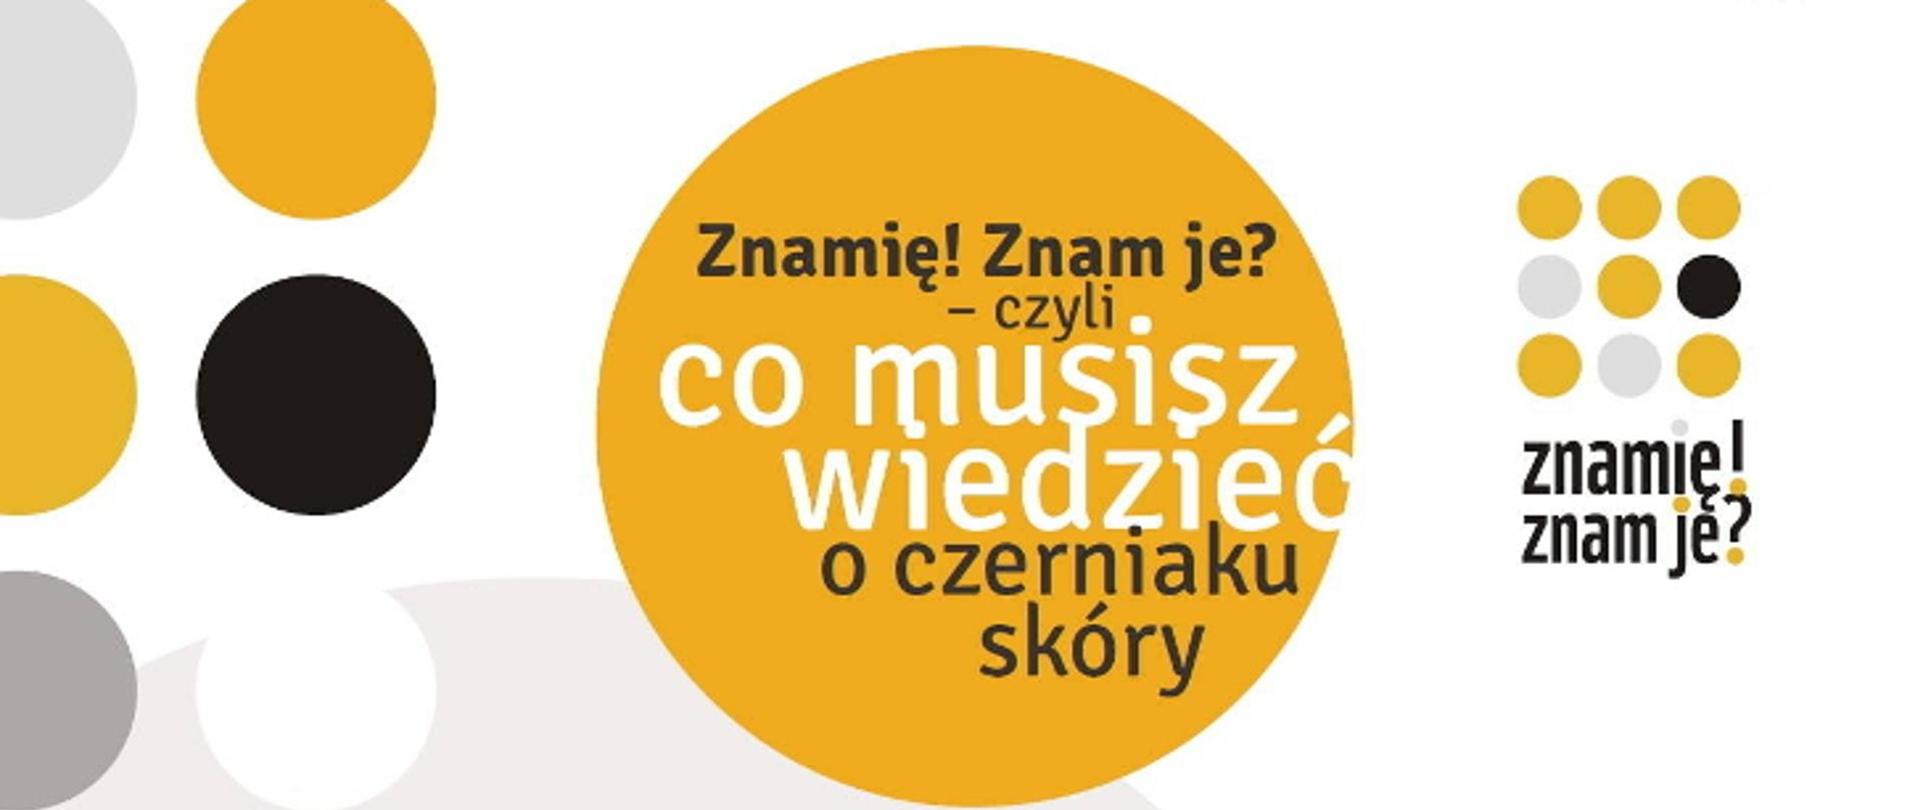 logo kampani w pomarańczowym okręgu Znamię! Znam je? czyli co musisz wiedzieć o czerniaku skóry 